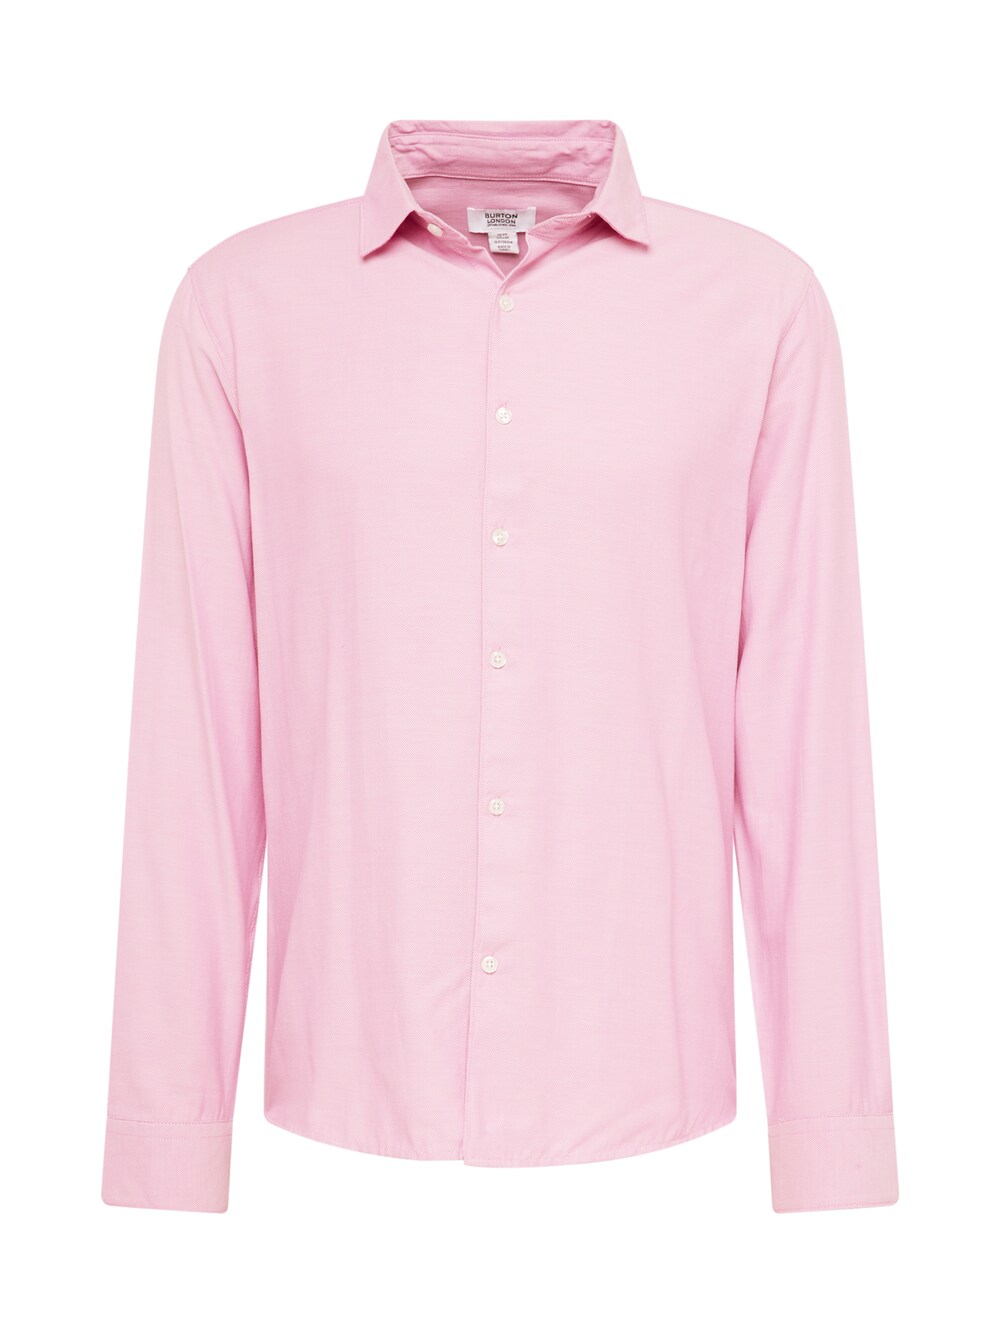 Рубашка узкого кроя на пуговицах BURTON MENSWEAR LONDON, розовый